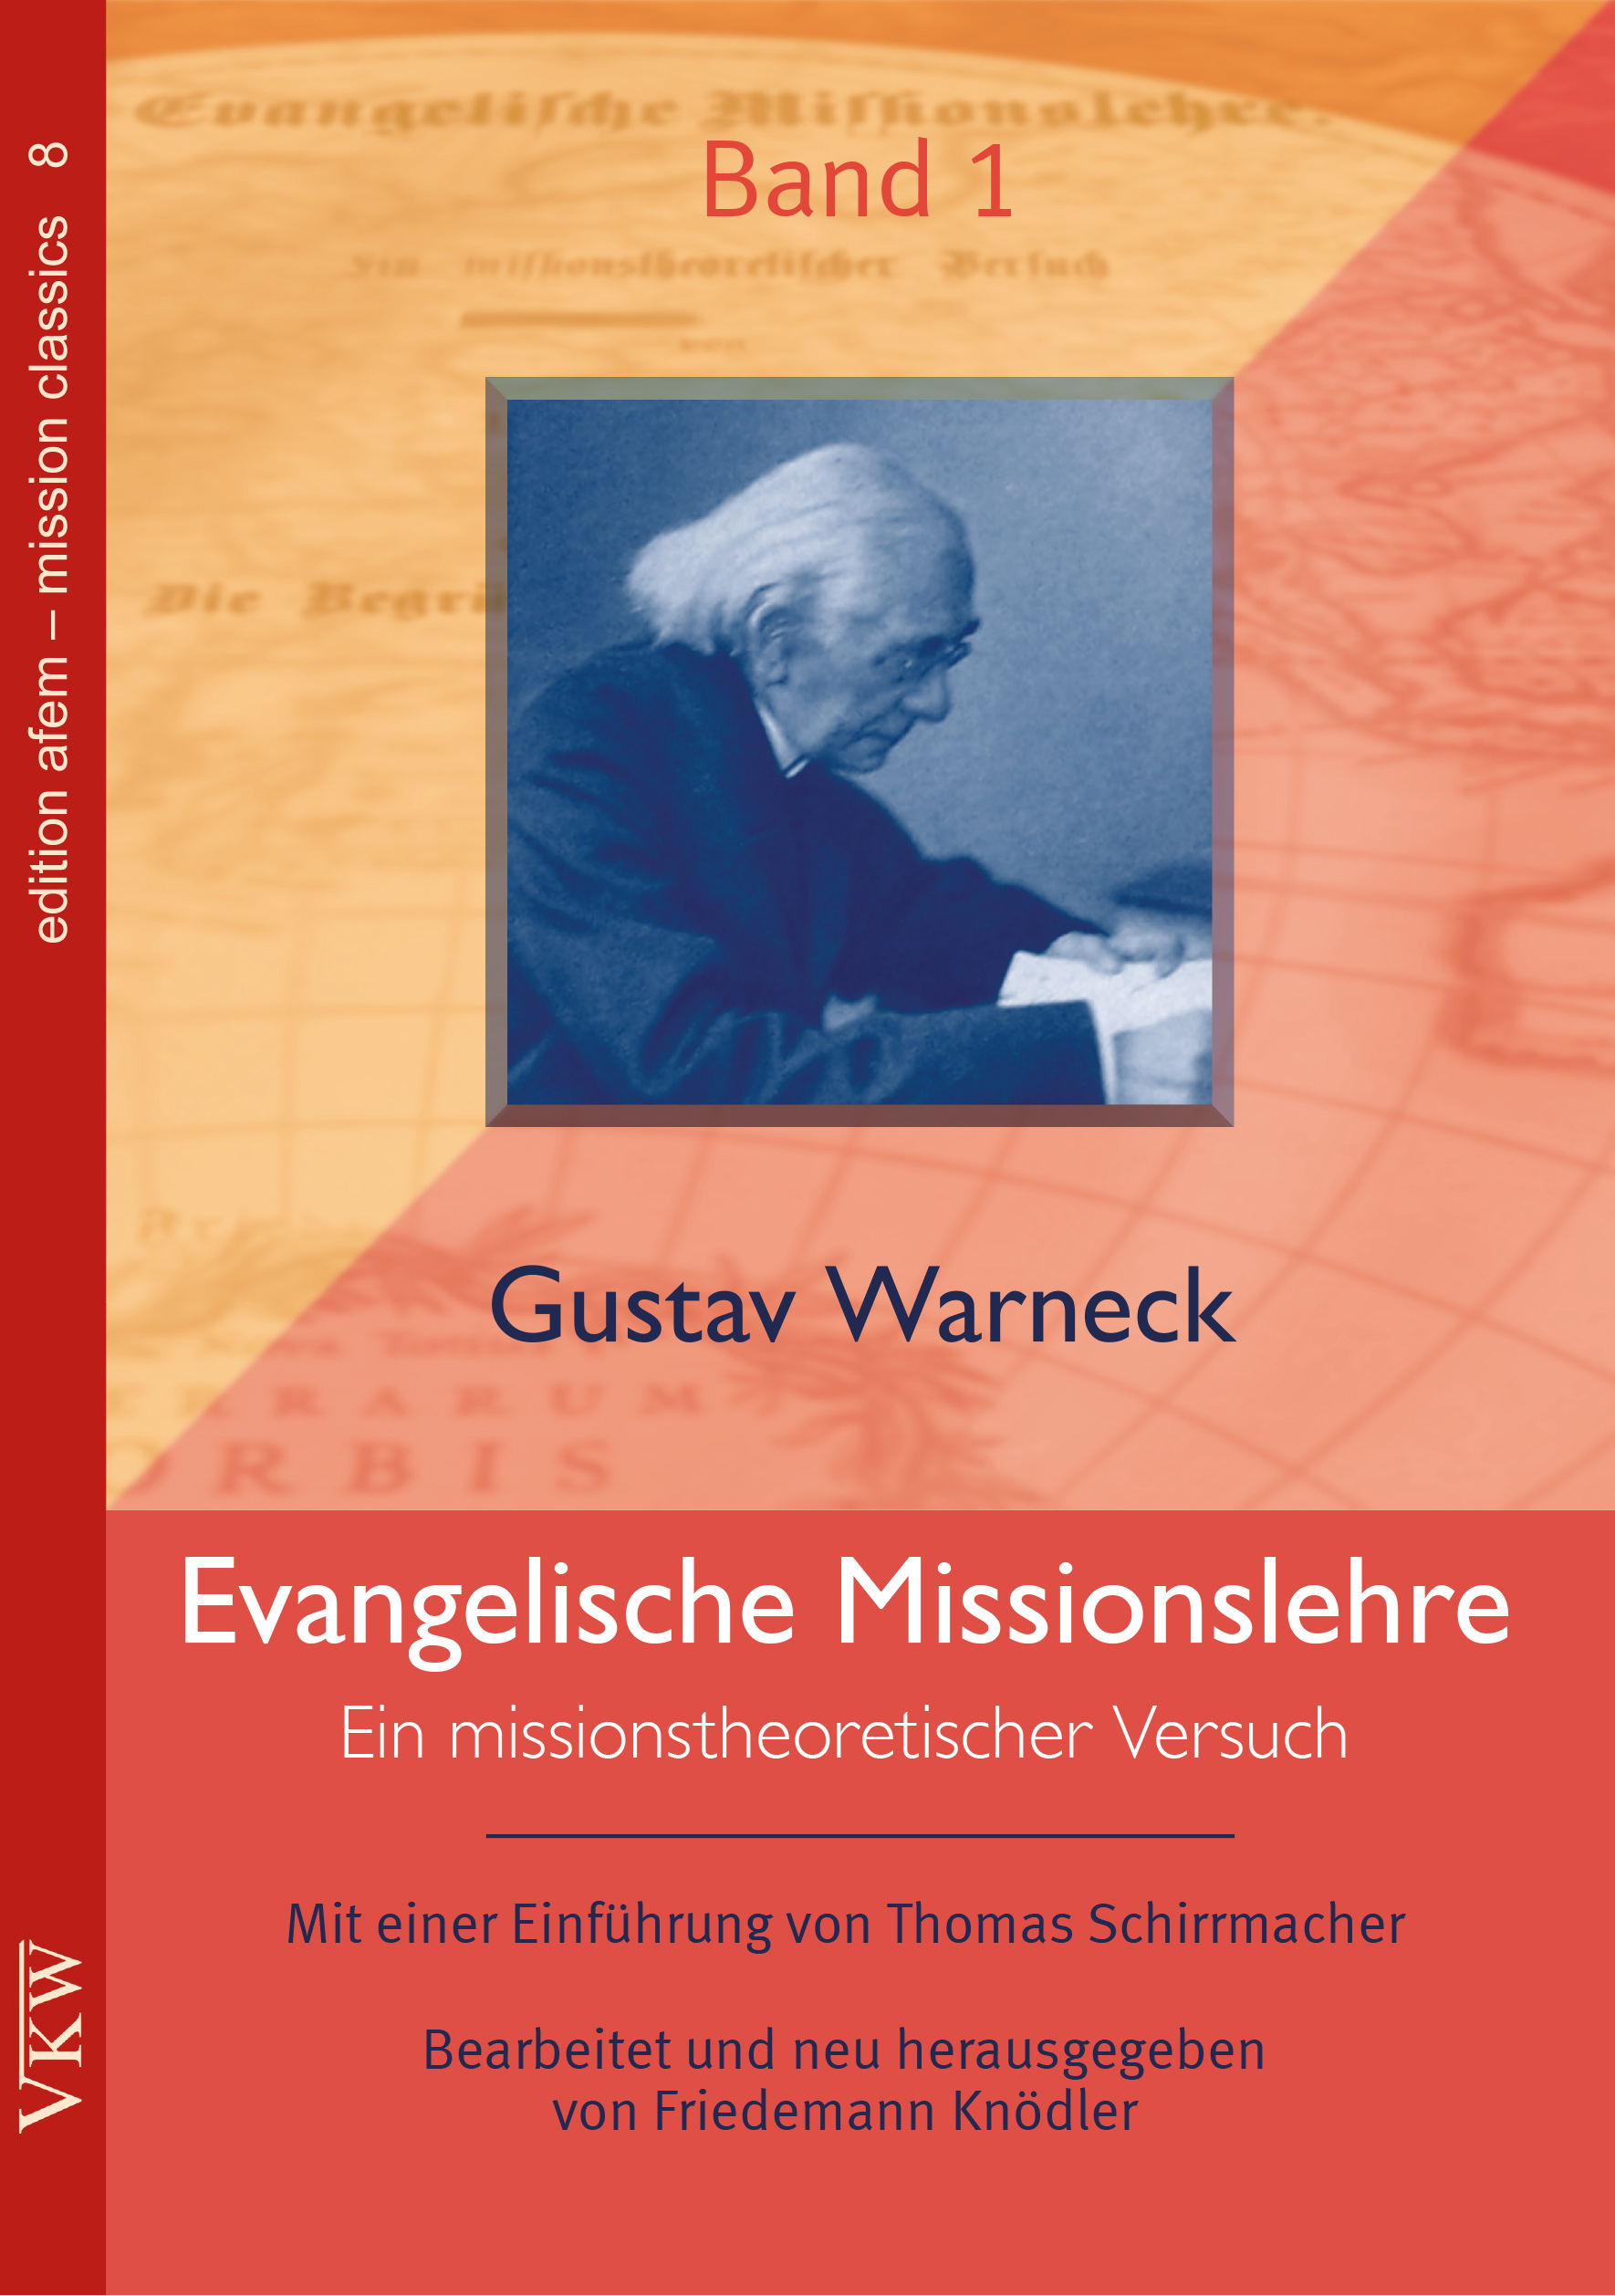 Gustav Warneck 2.0 - Evangelischer Arbeitskreis für Mission, Religion und Kultur (afem) legt Klassiker der Missionswissenschaft neu auf